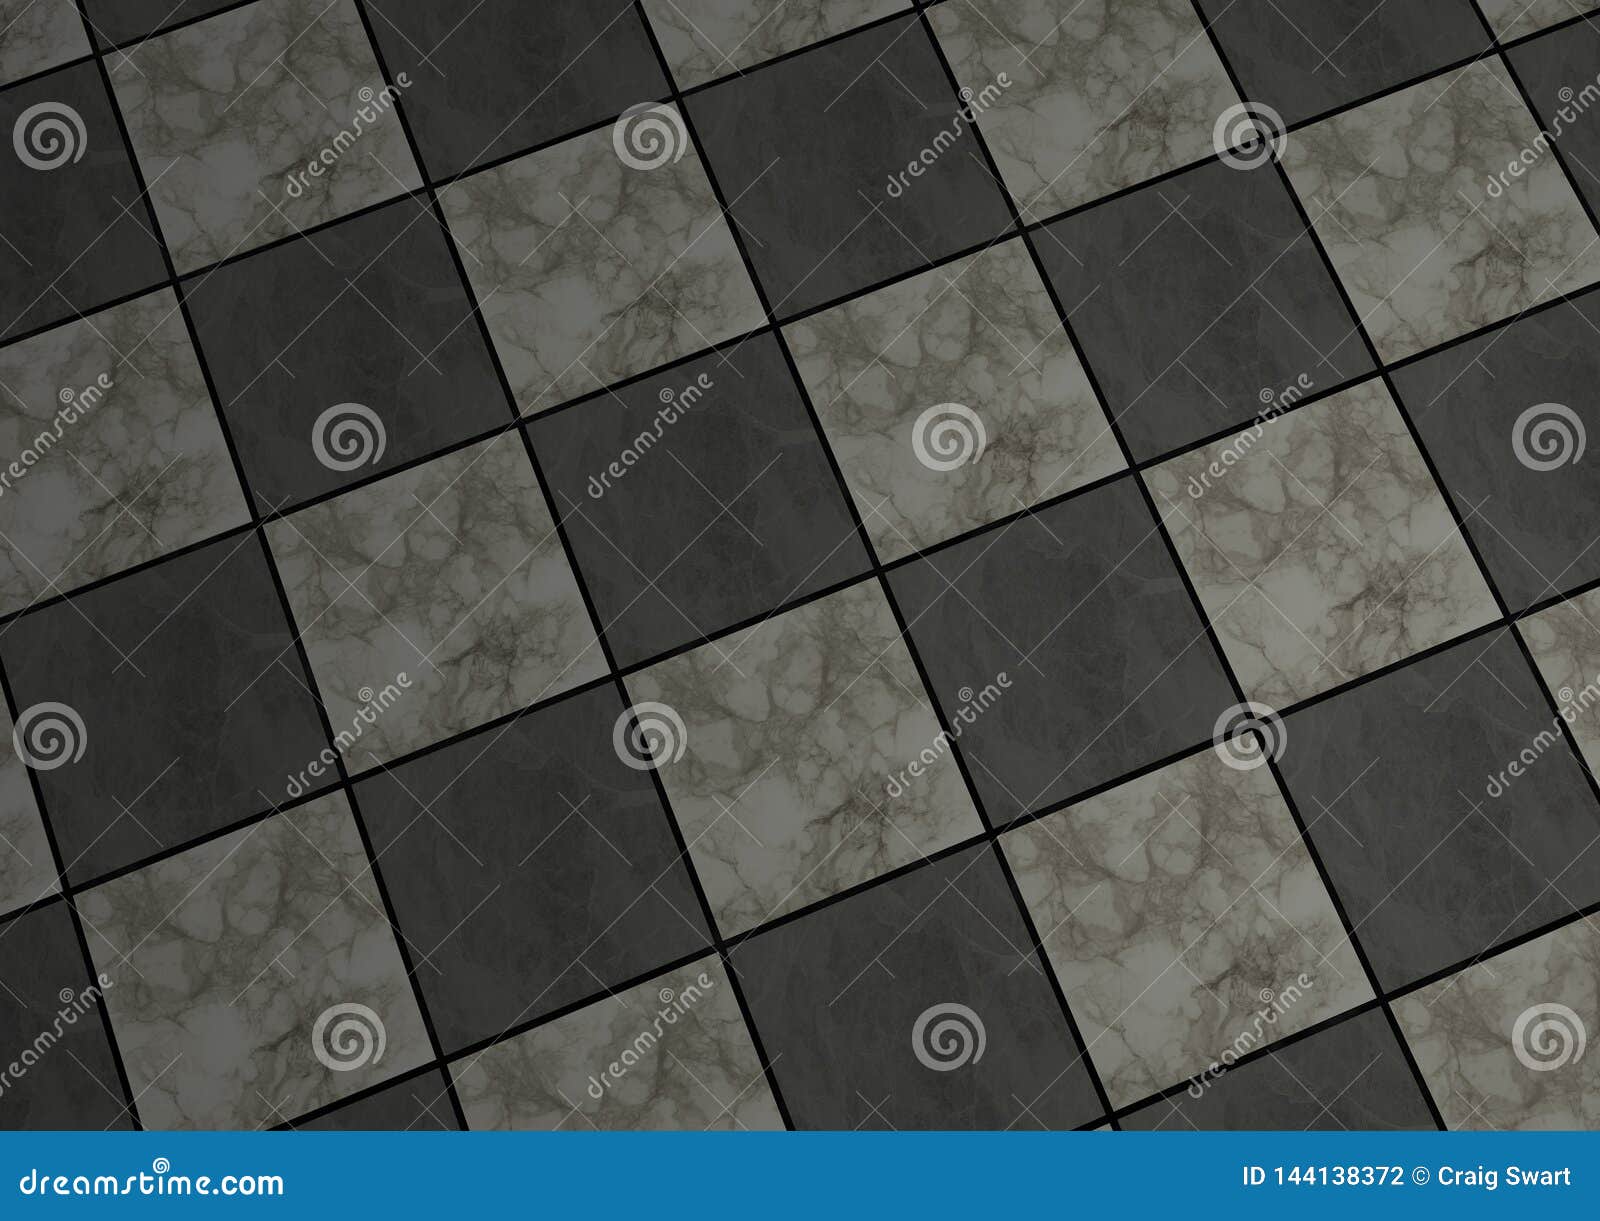 Tiled Marble Floor Stock Illustration Illustration Of Tiles